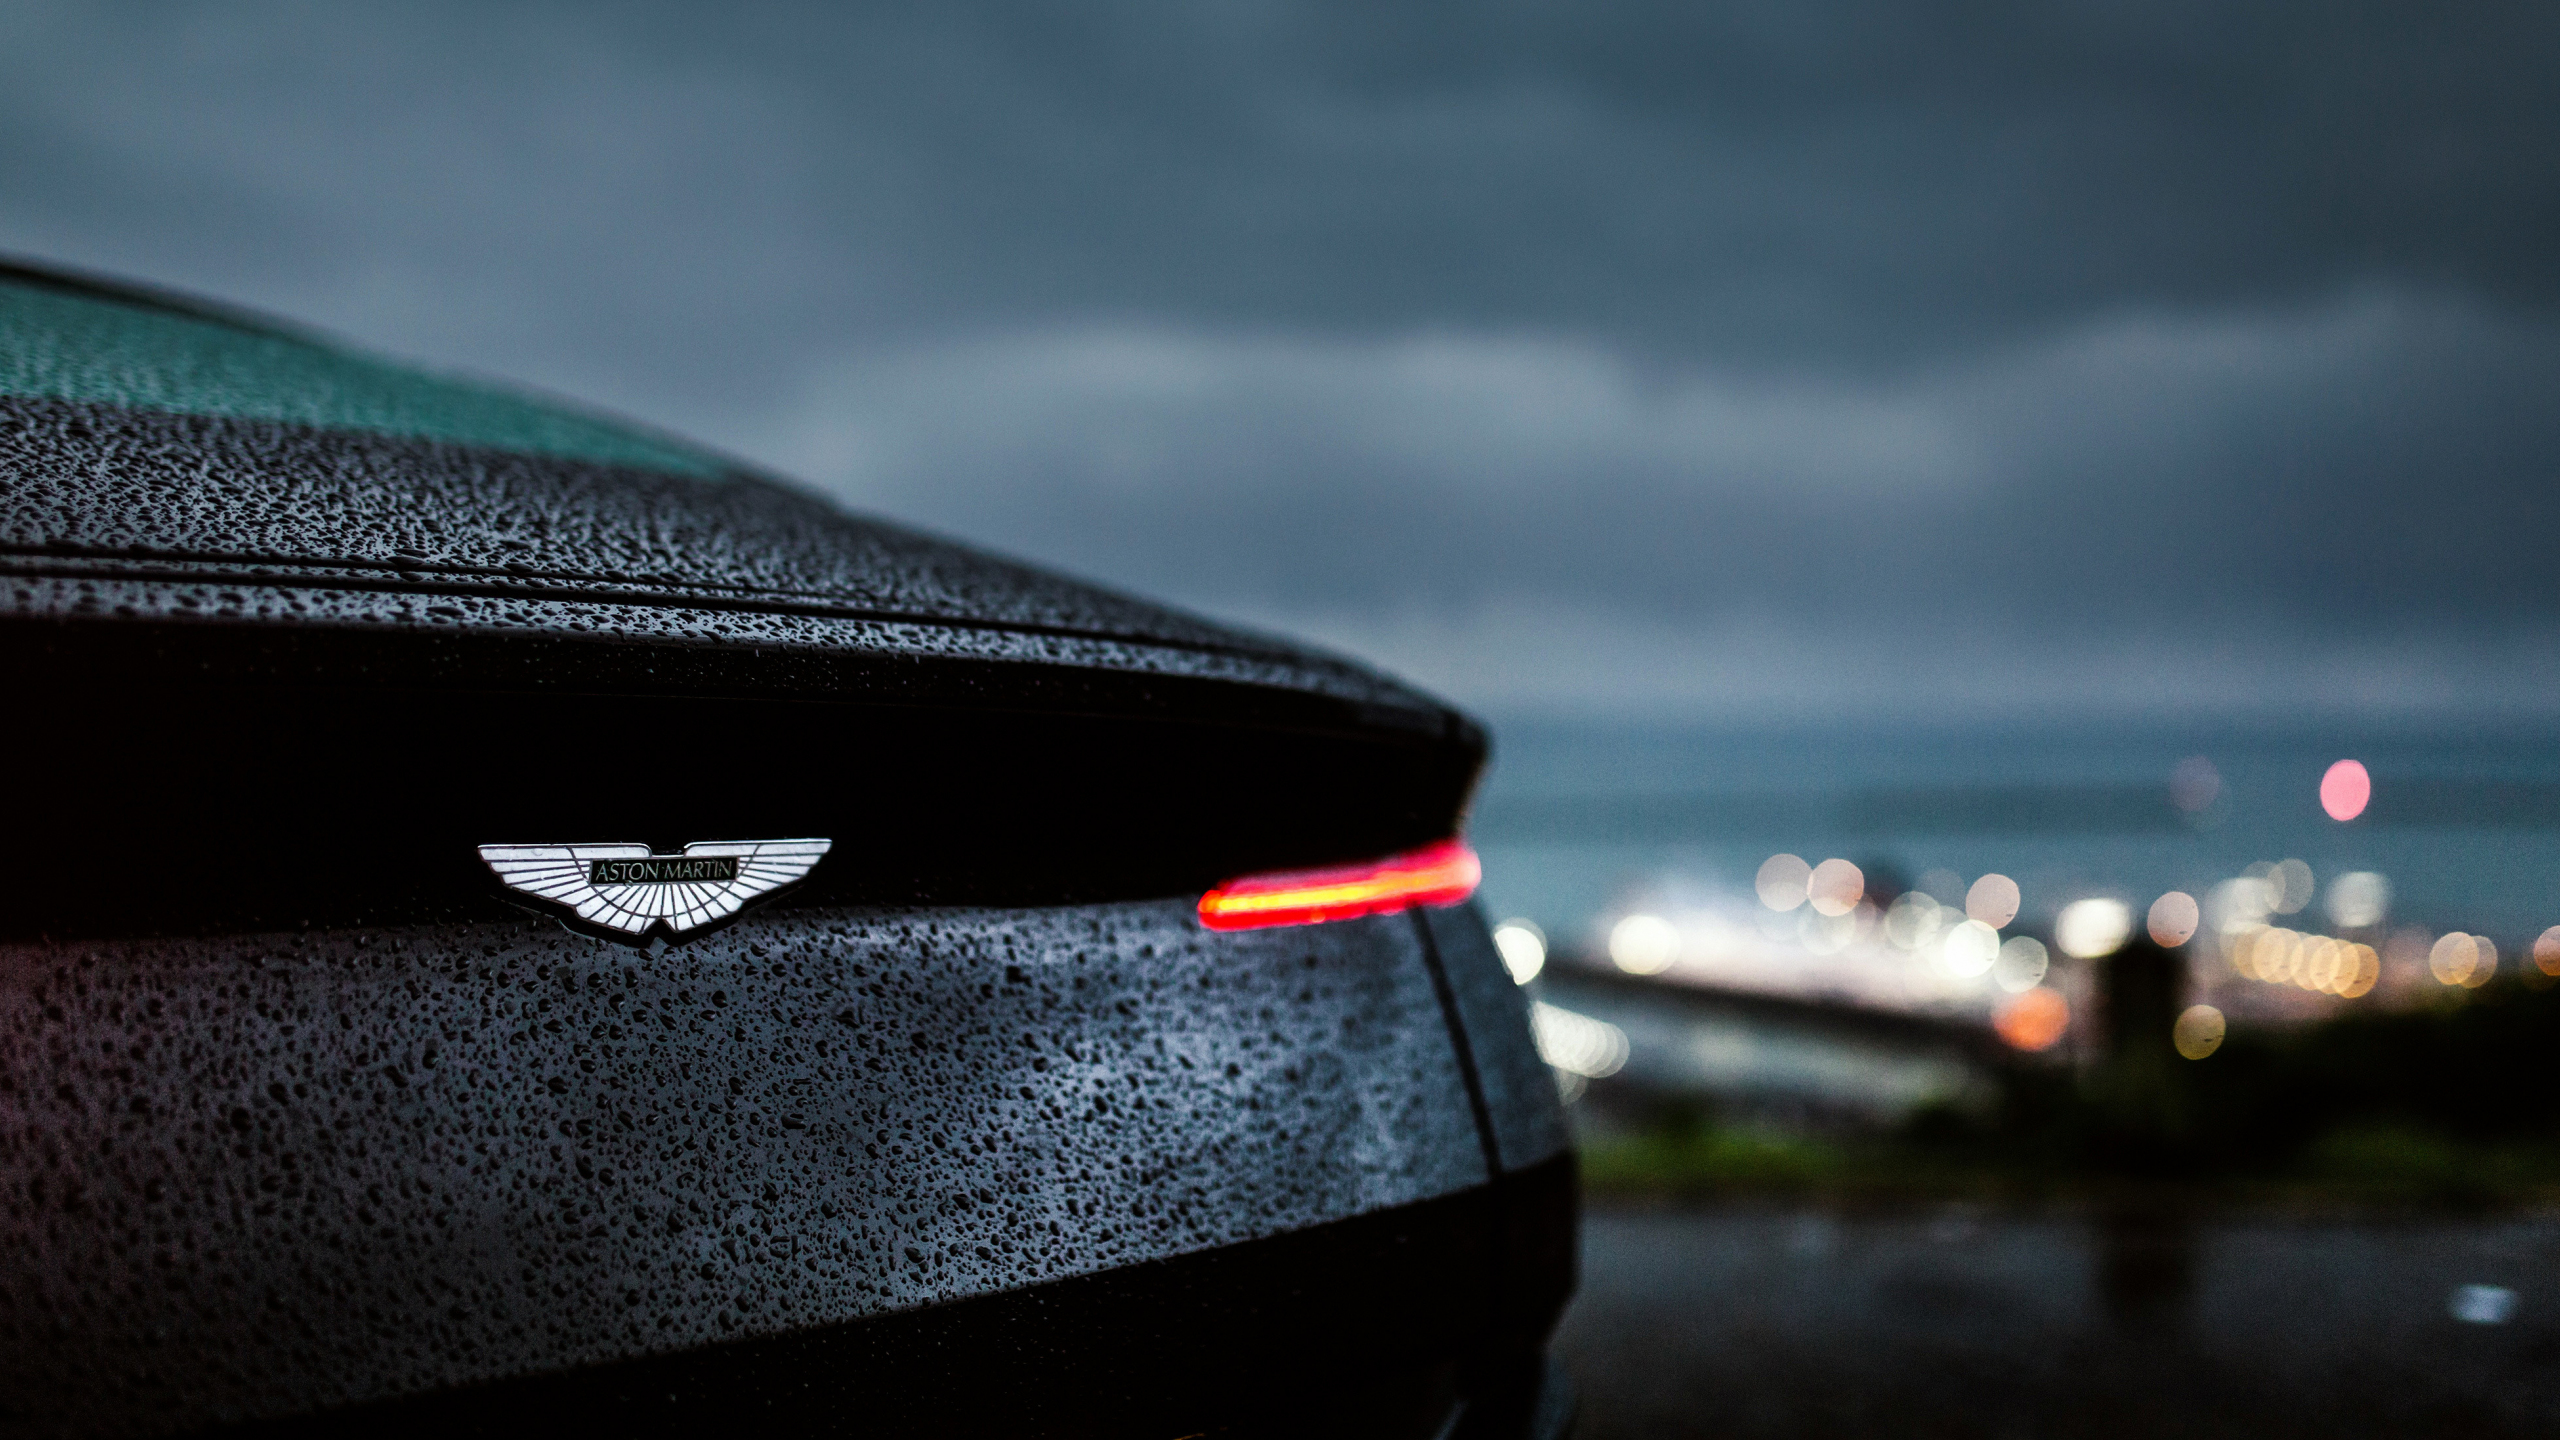 Aston Martin DB11, drops, rain, rear, taillight, 2560x1440 wallpaper